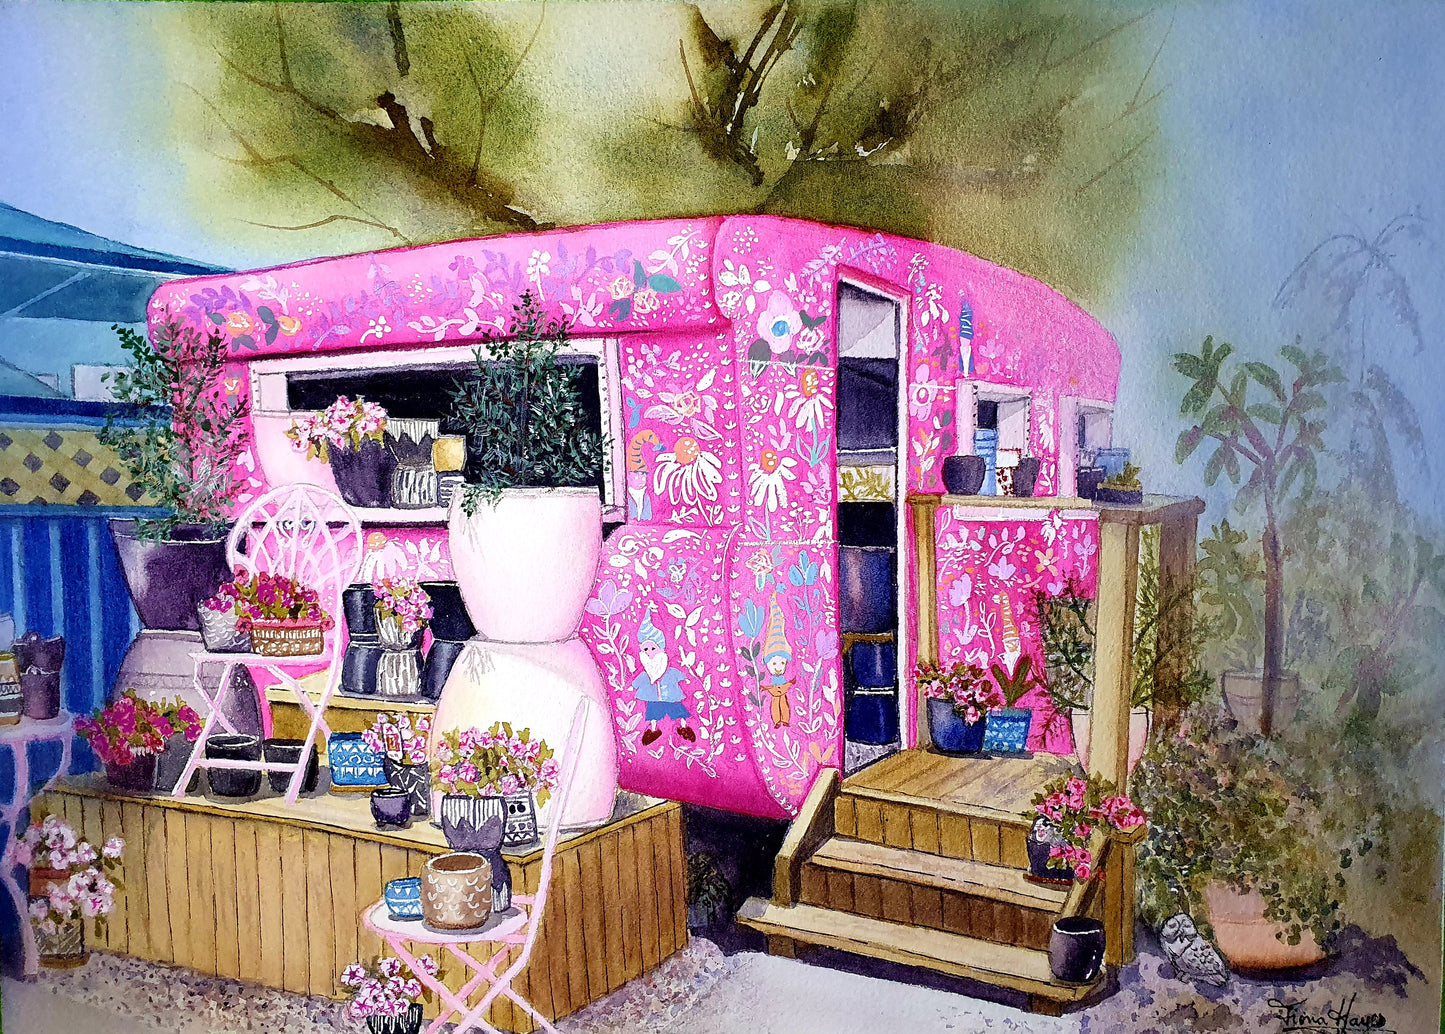 The Pink Potting Van